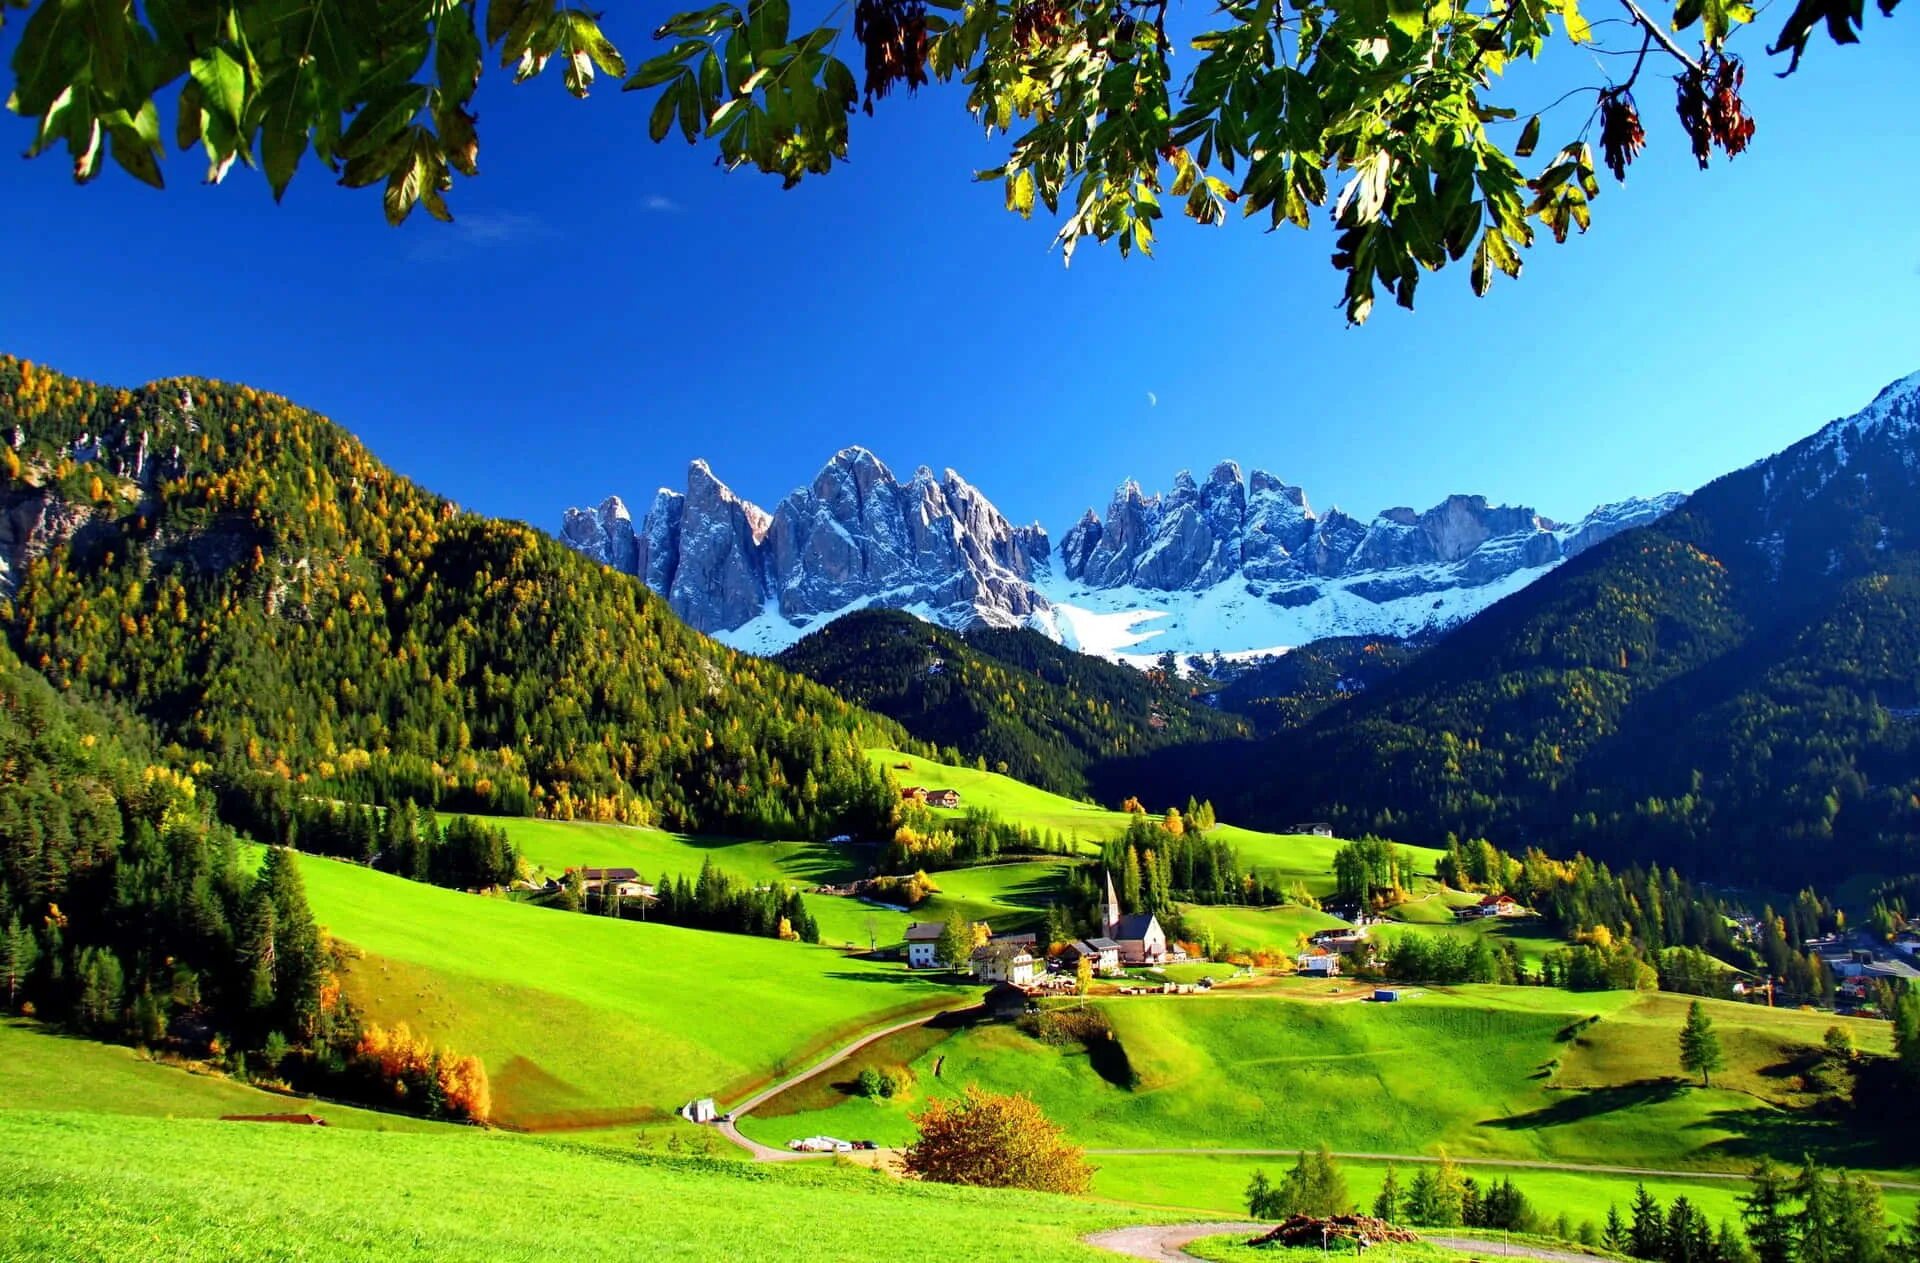 La natural. Долина Фунес Доломитовые Альпы Италия. Долина Фунес Южный Тироль Италия. Доломитовые горы, Италия, Val di Funes. Альпийские Луга Италии.